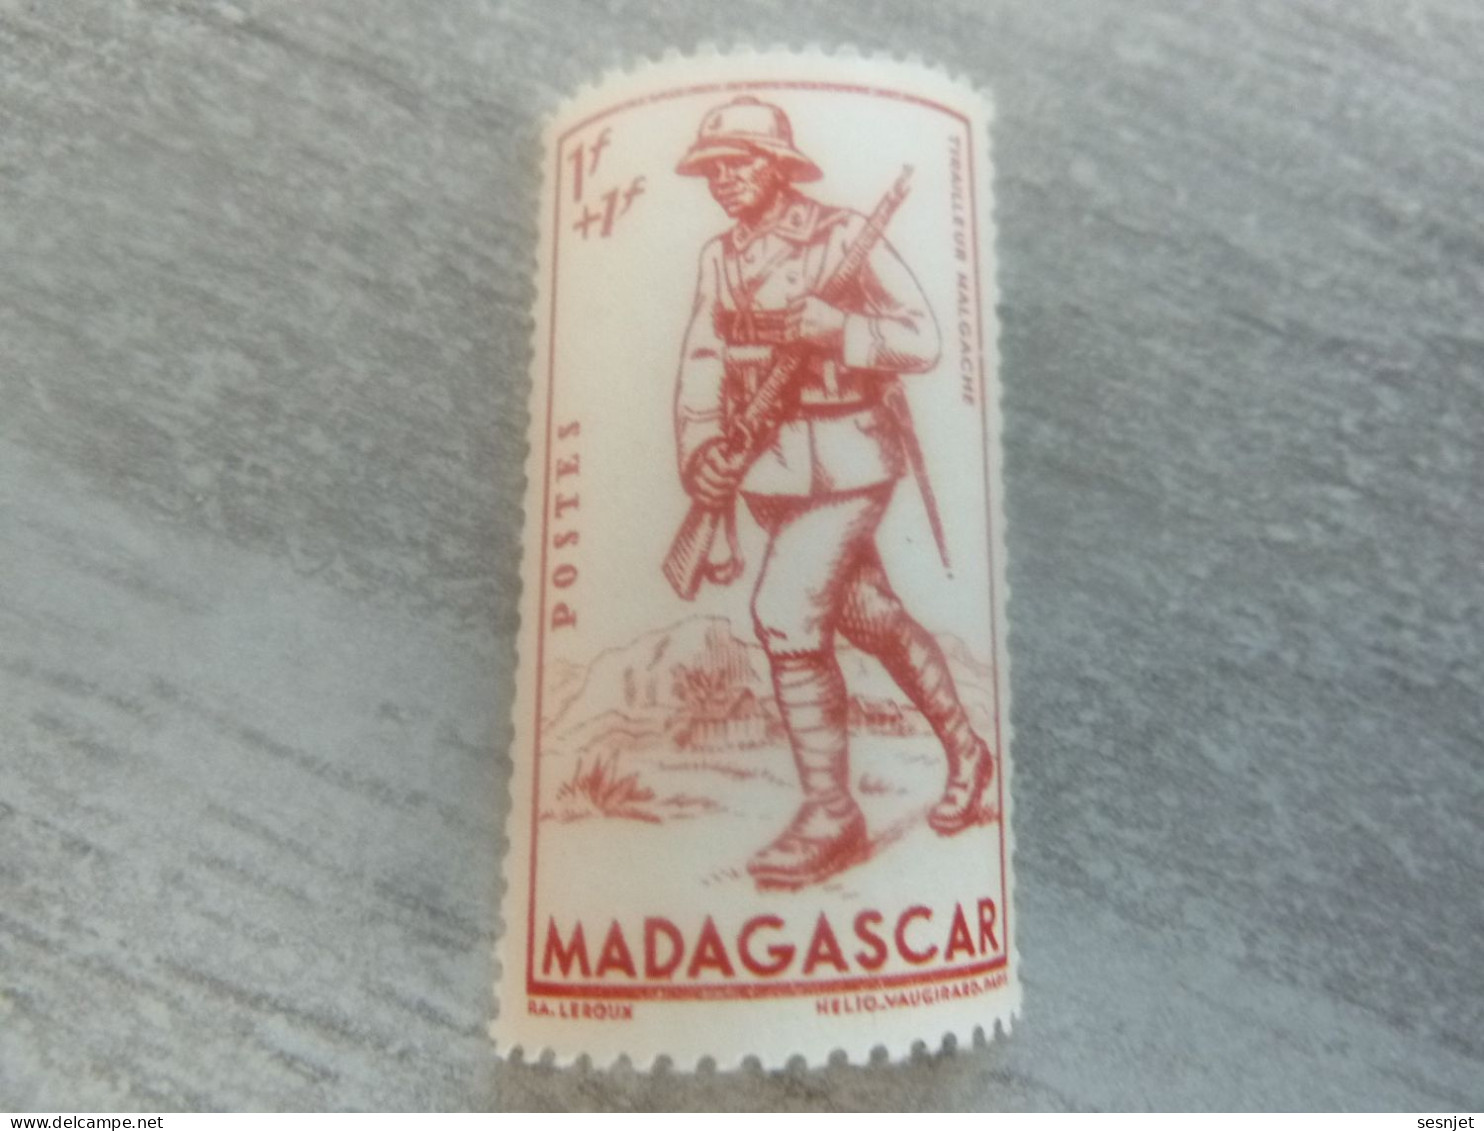 Madagascar - Tirailleur Malgache - 1f.+1f. - Yt 226 - Helio Vaugirard Paris - Rouge-orange - Neuf - Année 1941 - - Unused Stamps